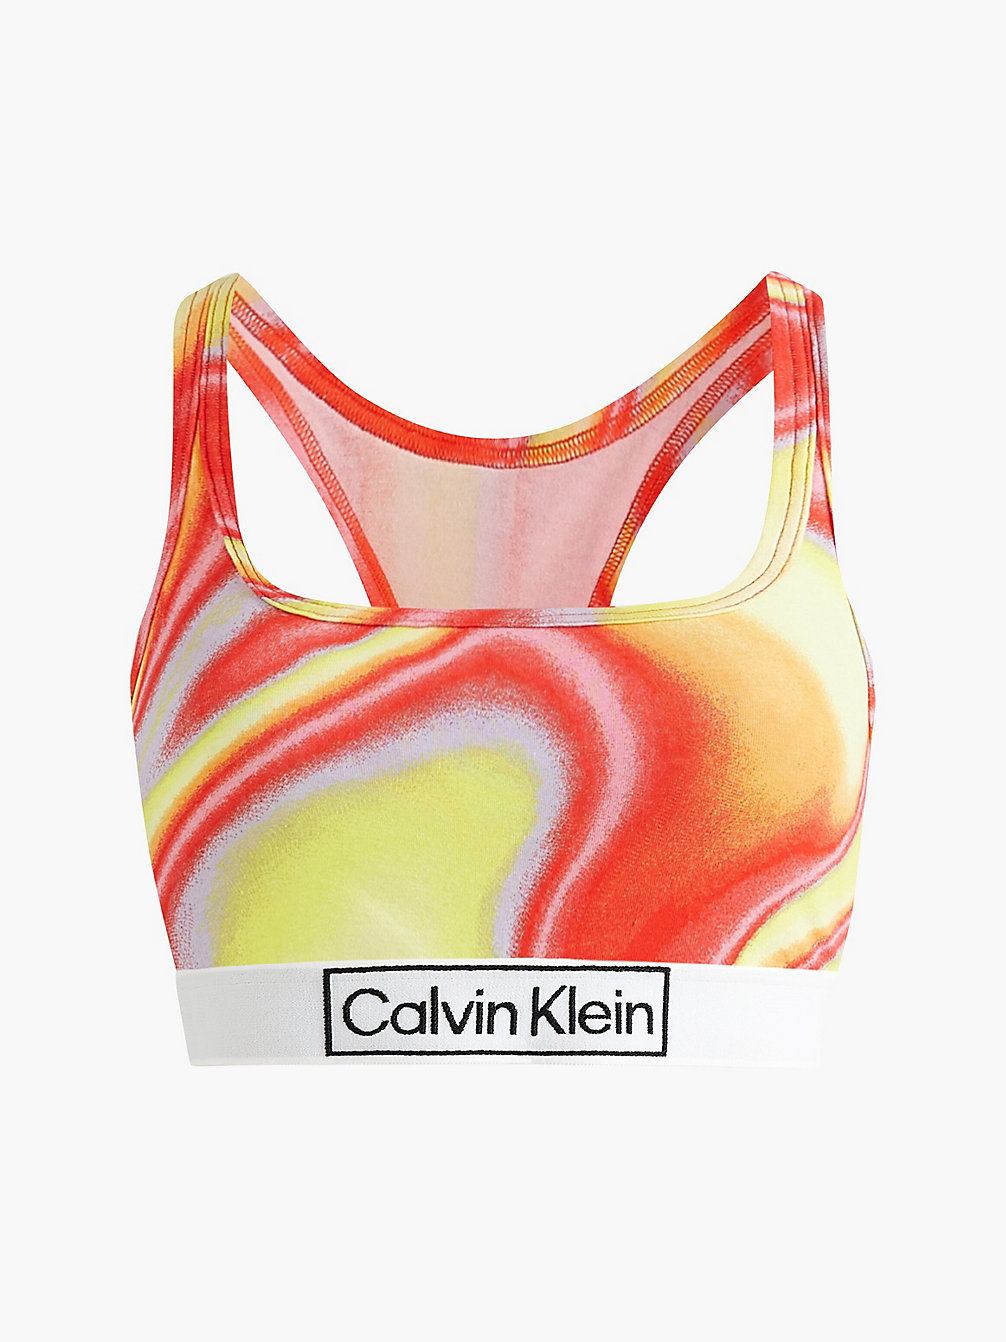 IRIDESCENT PRINT_TUSCAN TERRA COTTA Bralette – Pride undefined Damen Calvin Klein